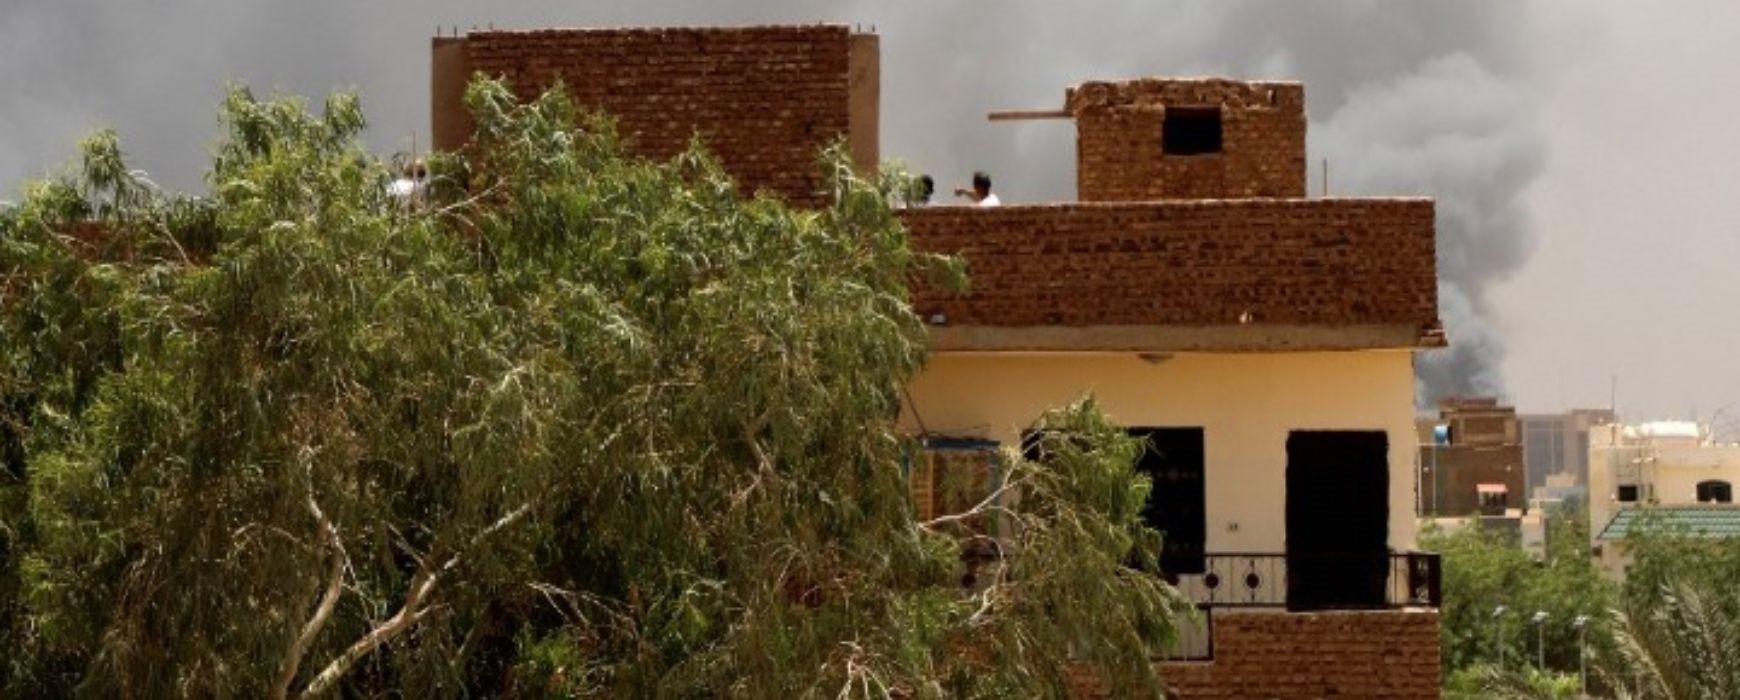 Σουδάν: Δύο Έλληνες τραυματίστηκαν από ρουκέτα – Έκκρυθμη η κατάσταση στη χώρα (Videos)